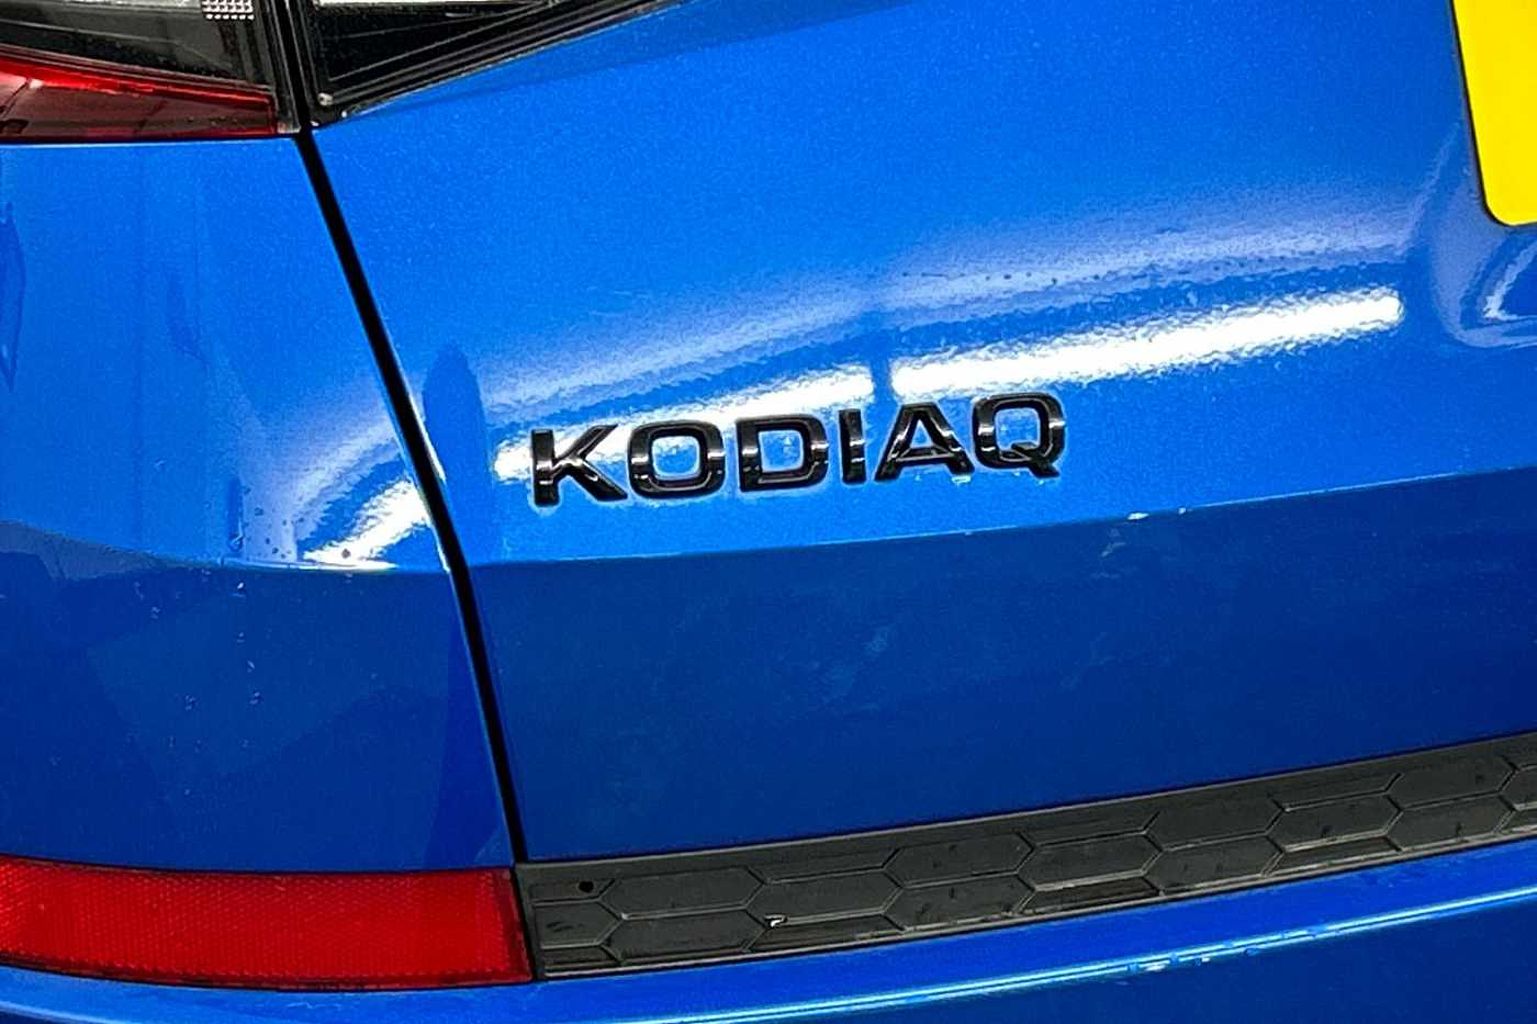 SKODA Kodiaq 1.5 TSI (150ps) Sportline (7 seats) ACT DSG